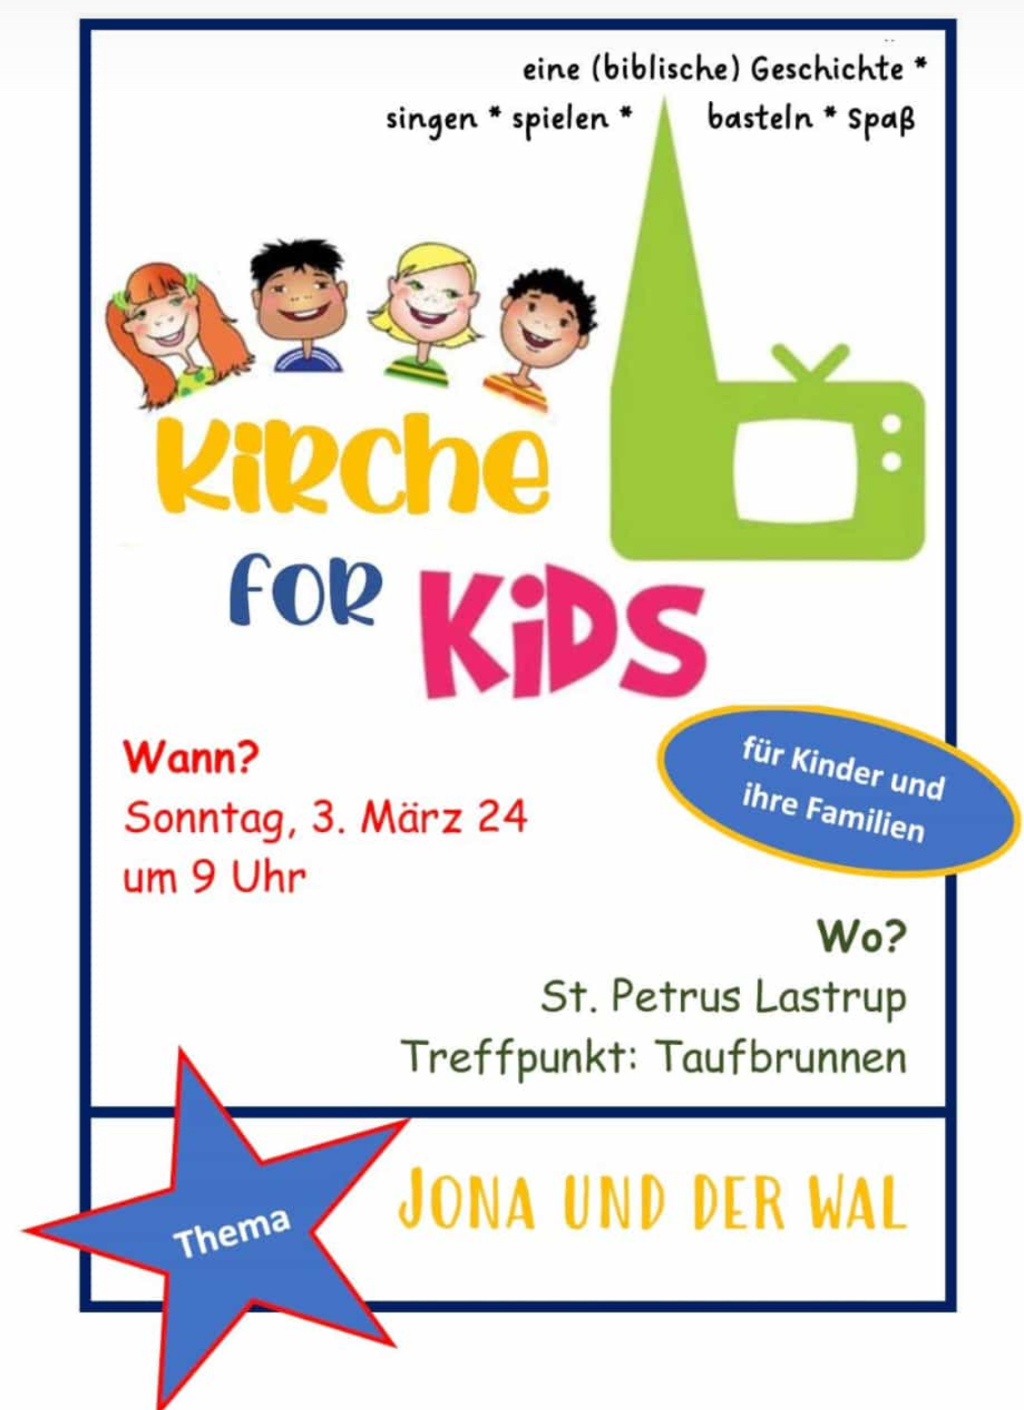 Kirche for Kids am 3. März